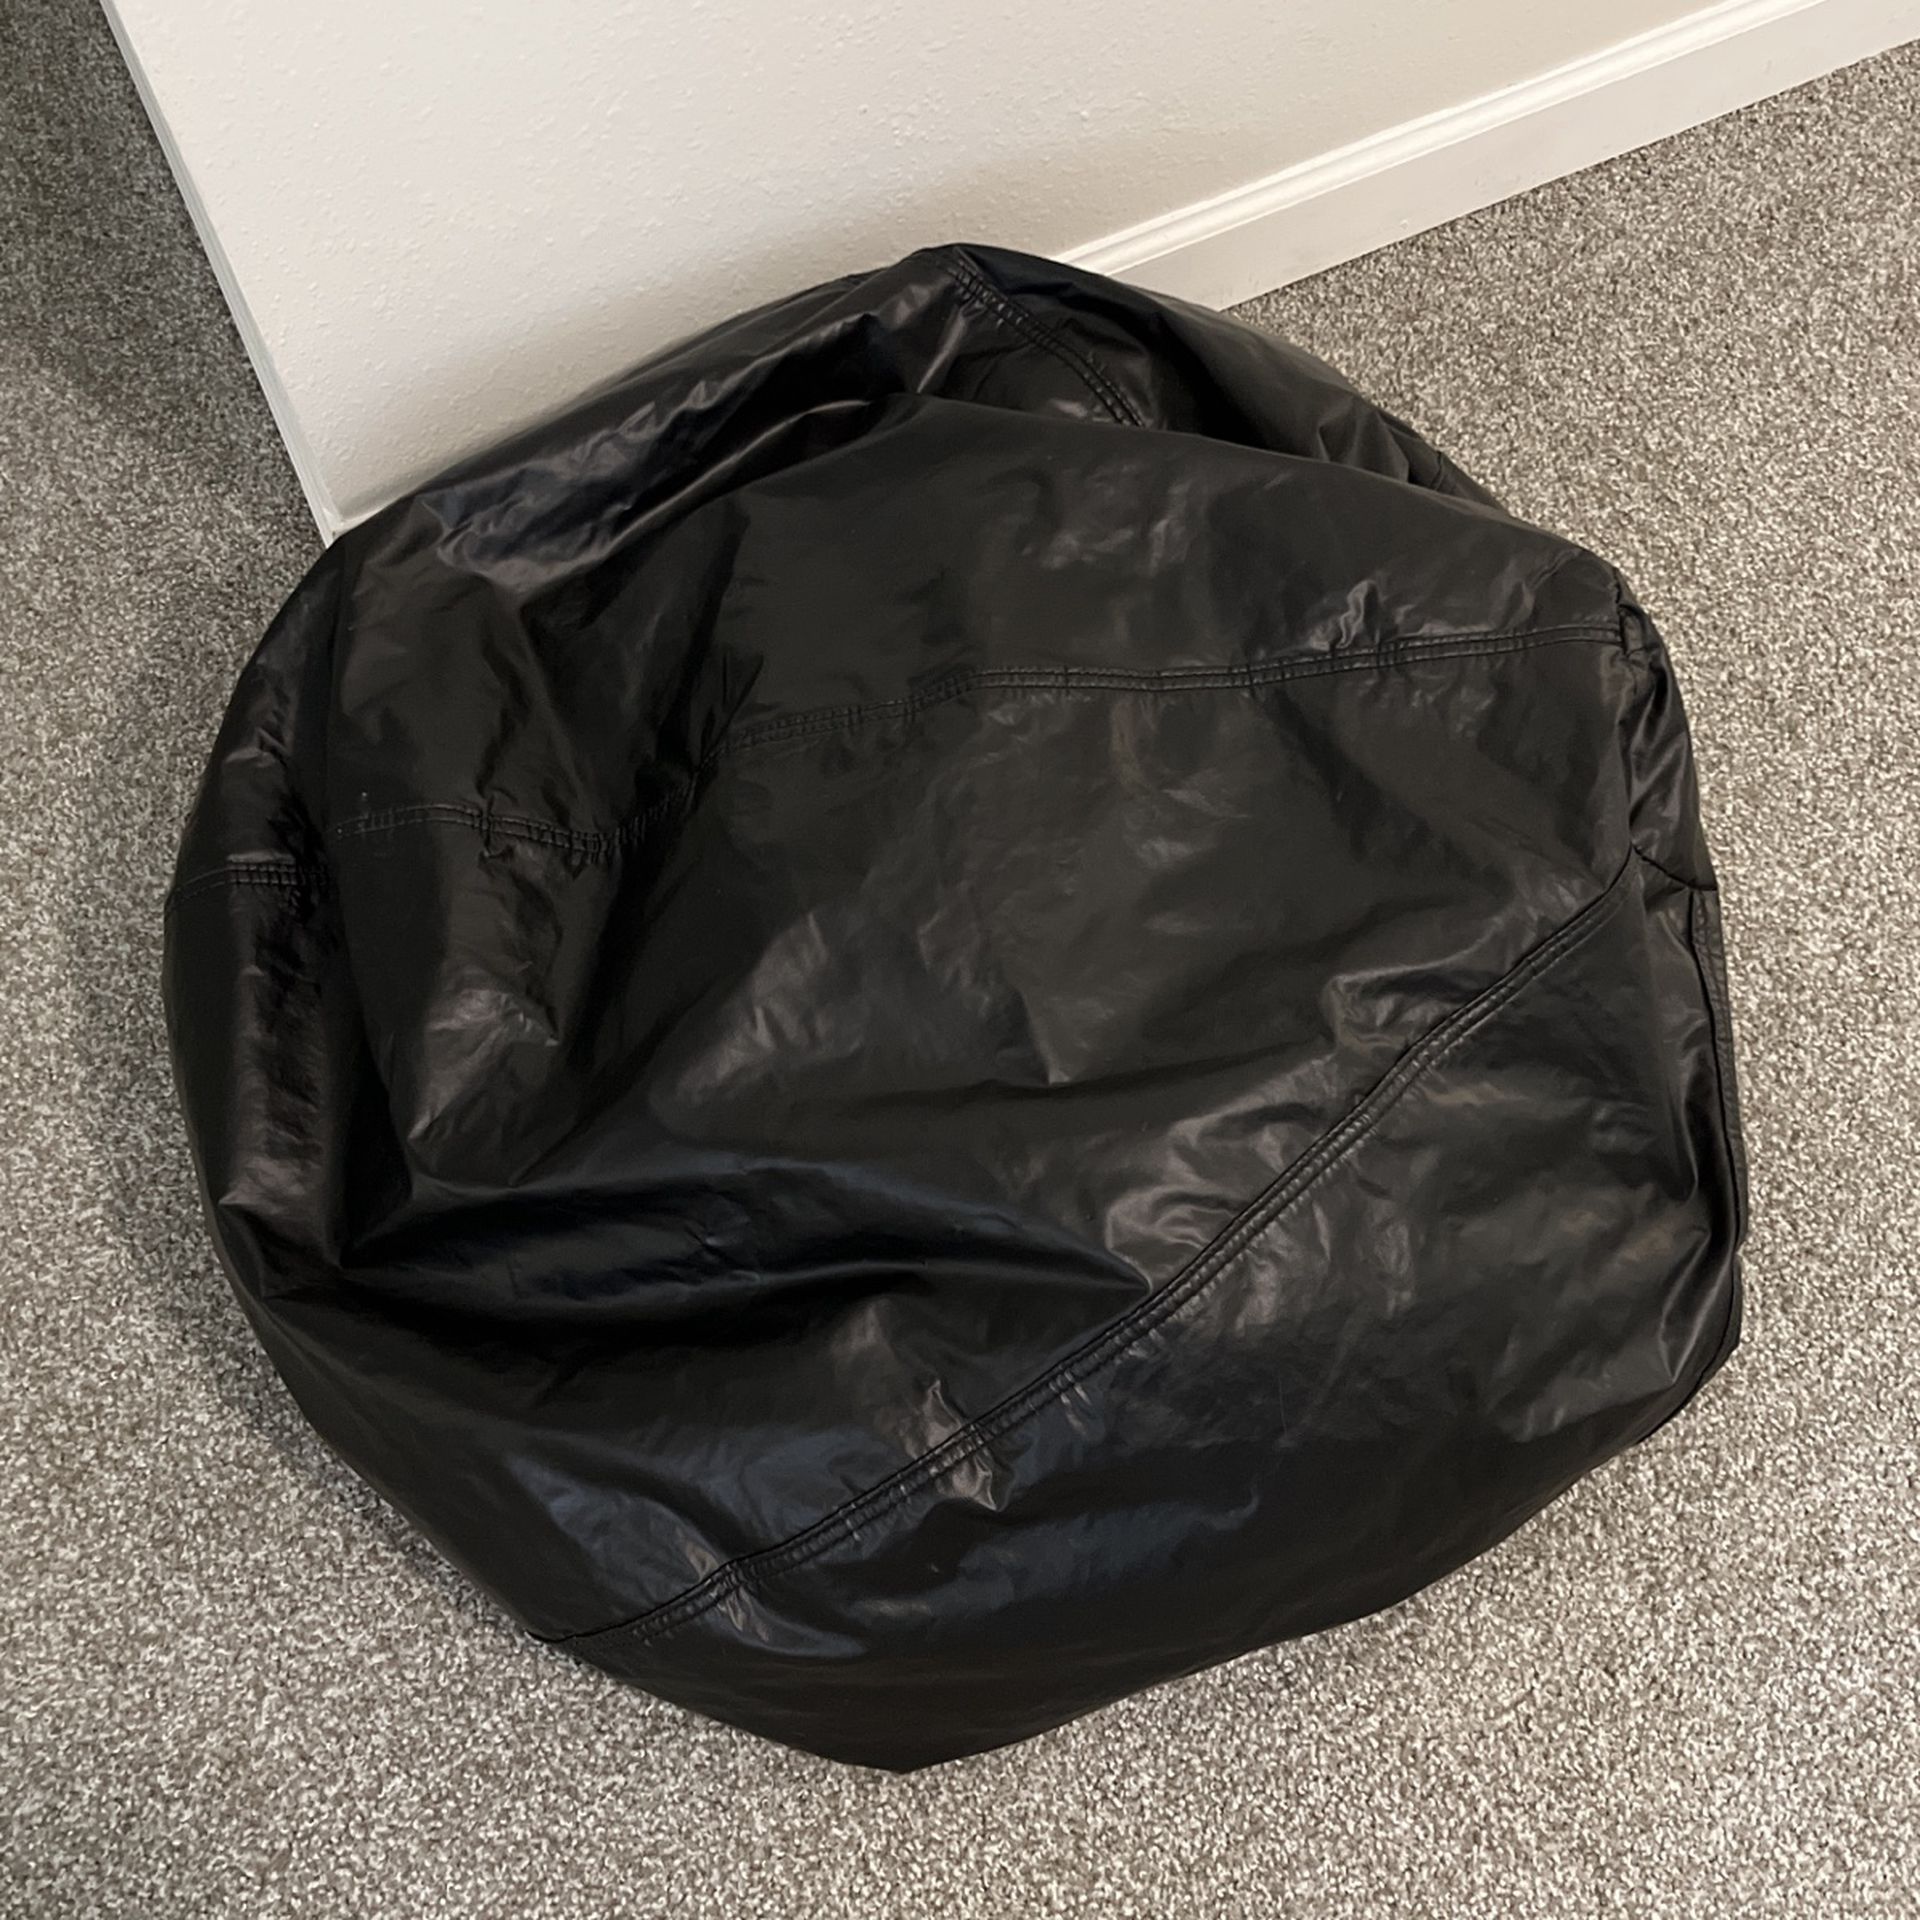 Black Bean Bag Chair